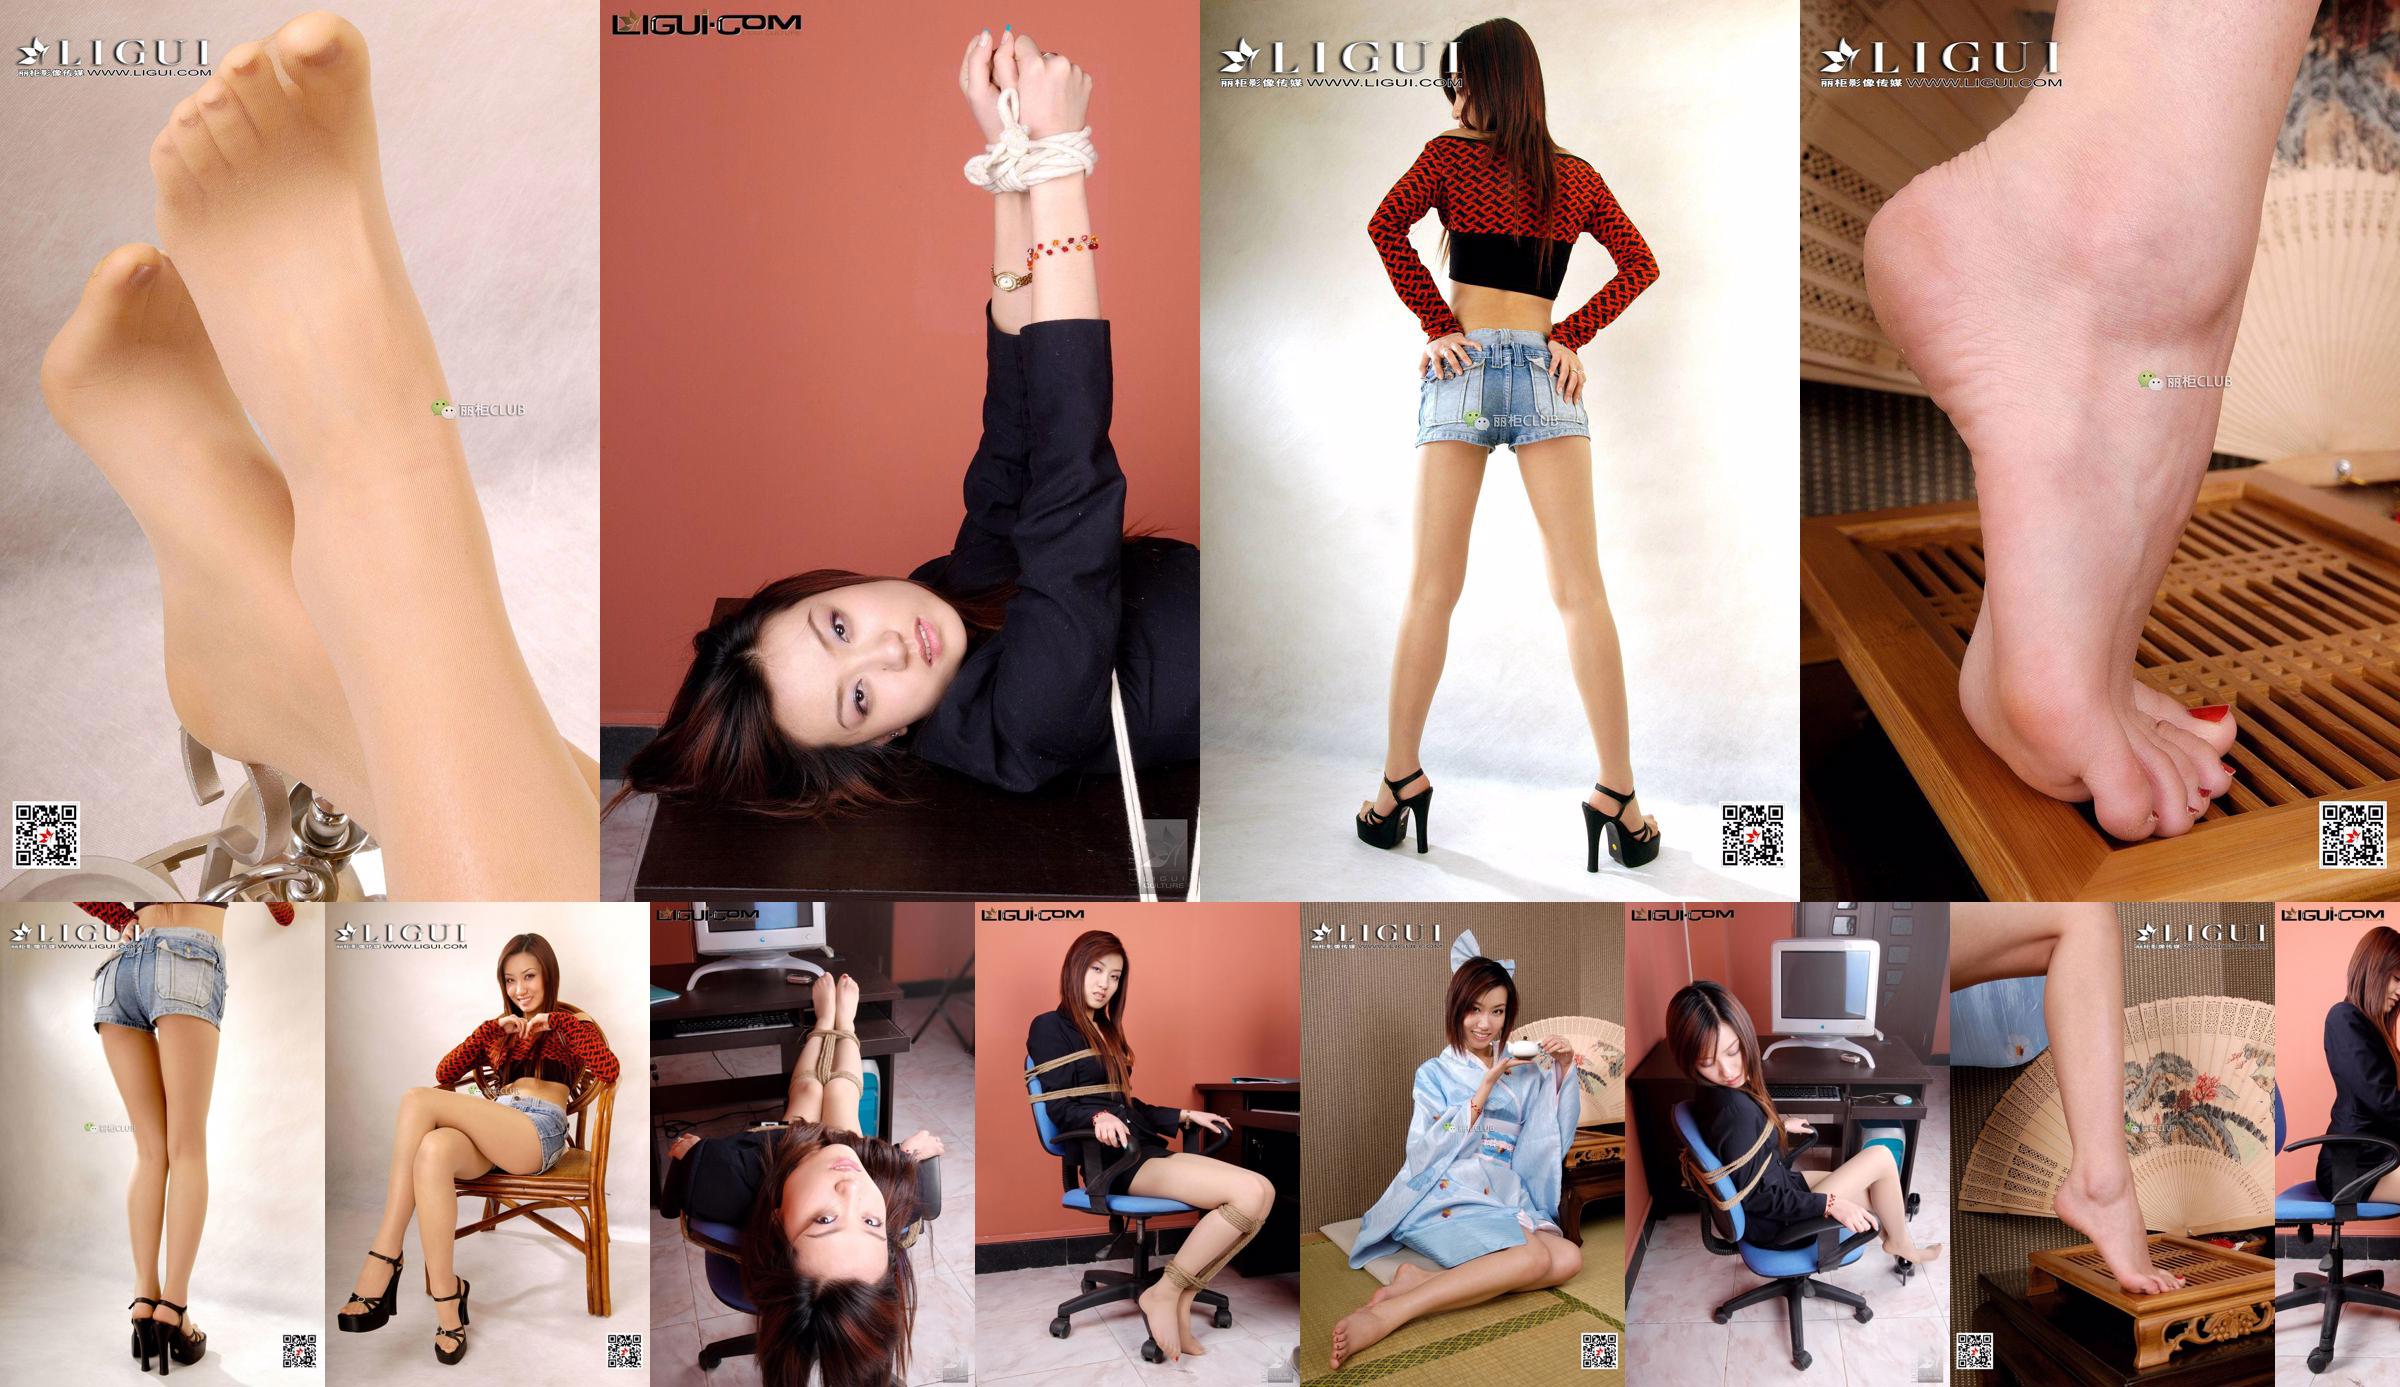 [丽 柜 美 ​​束 LiGui] Model Xiaohuis "Office Bundled" -Foto von schönen Beinen und Füßen No.c75bbc Seite 2